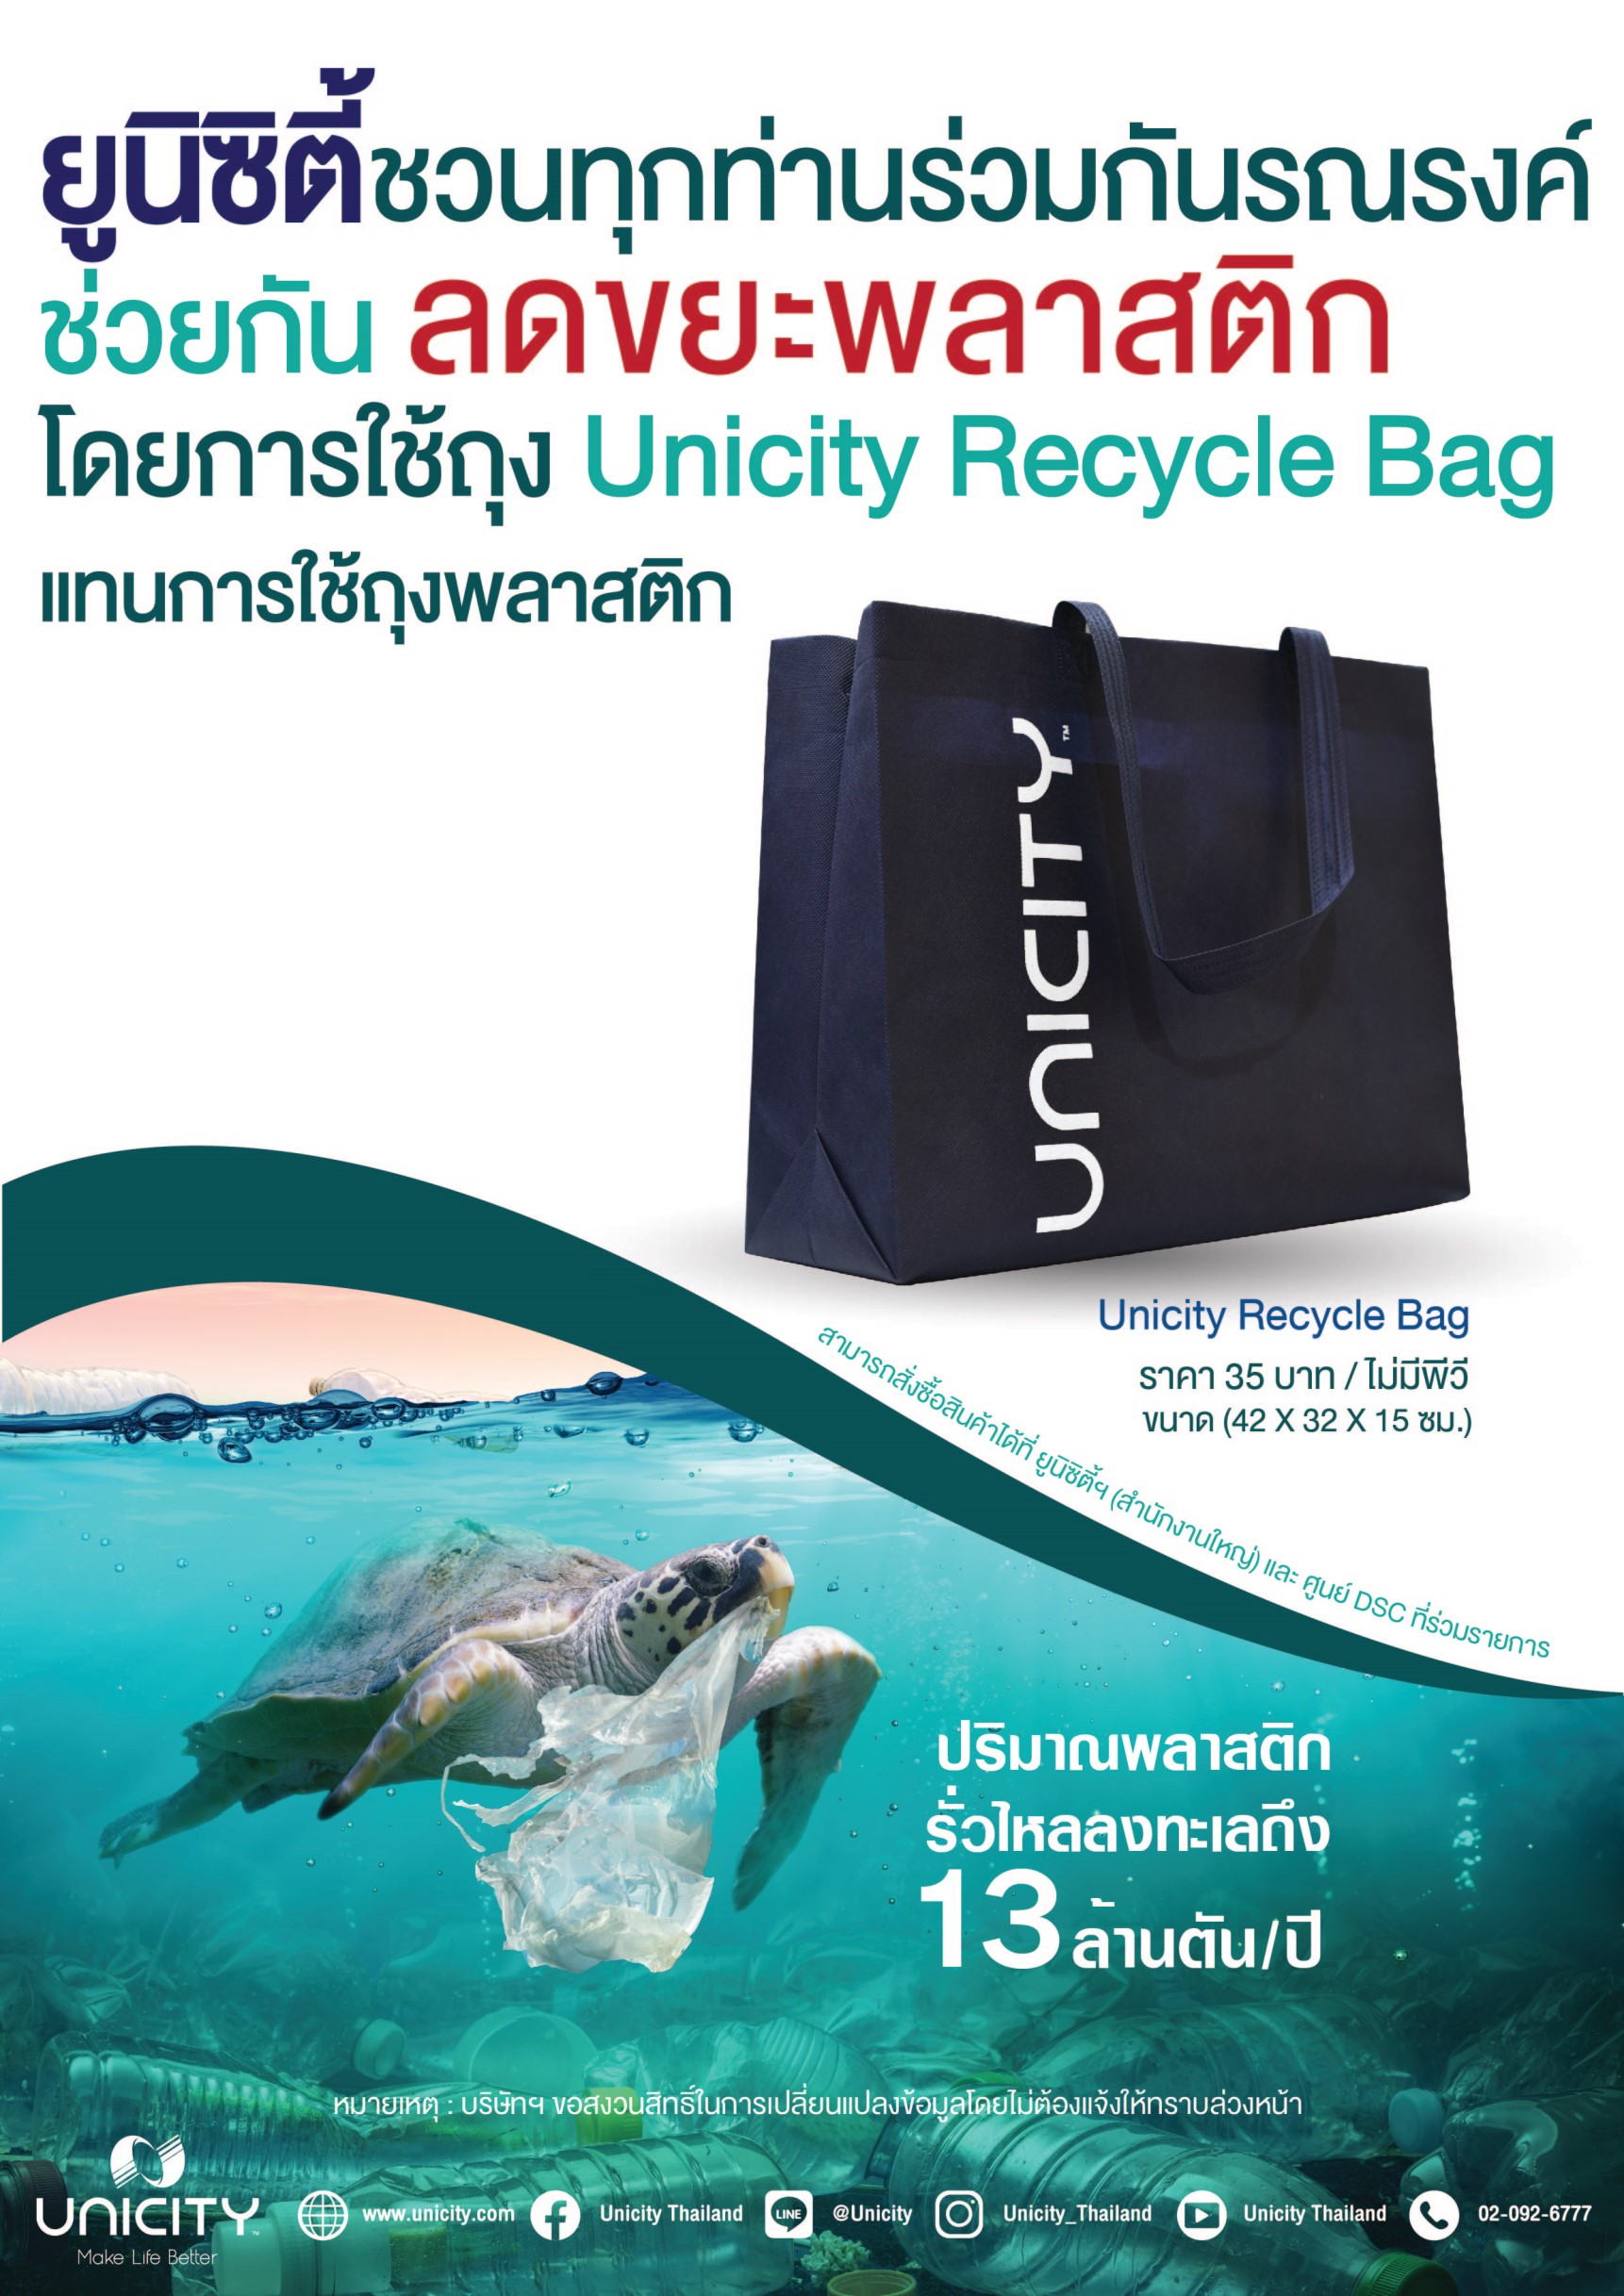 ยูนิซิตี้ รณรงค์ใช้ Unicity Recycle Bag ลดปริมาณขยะพลาสติก